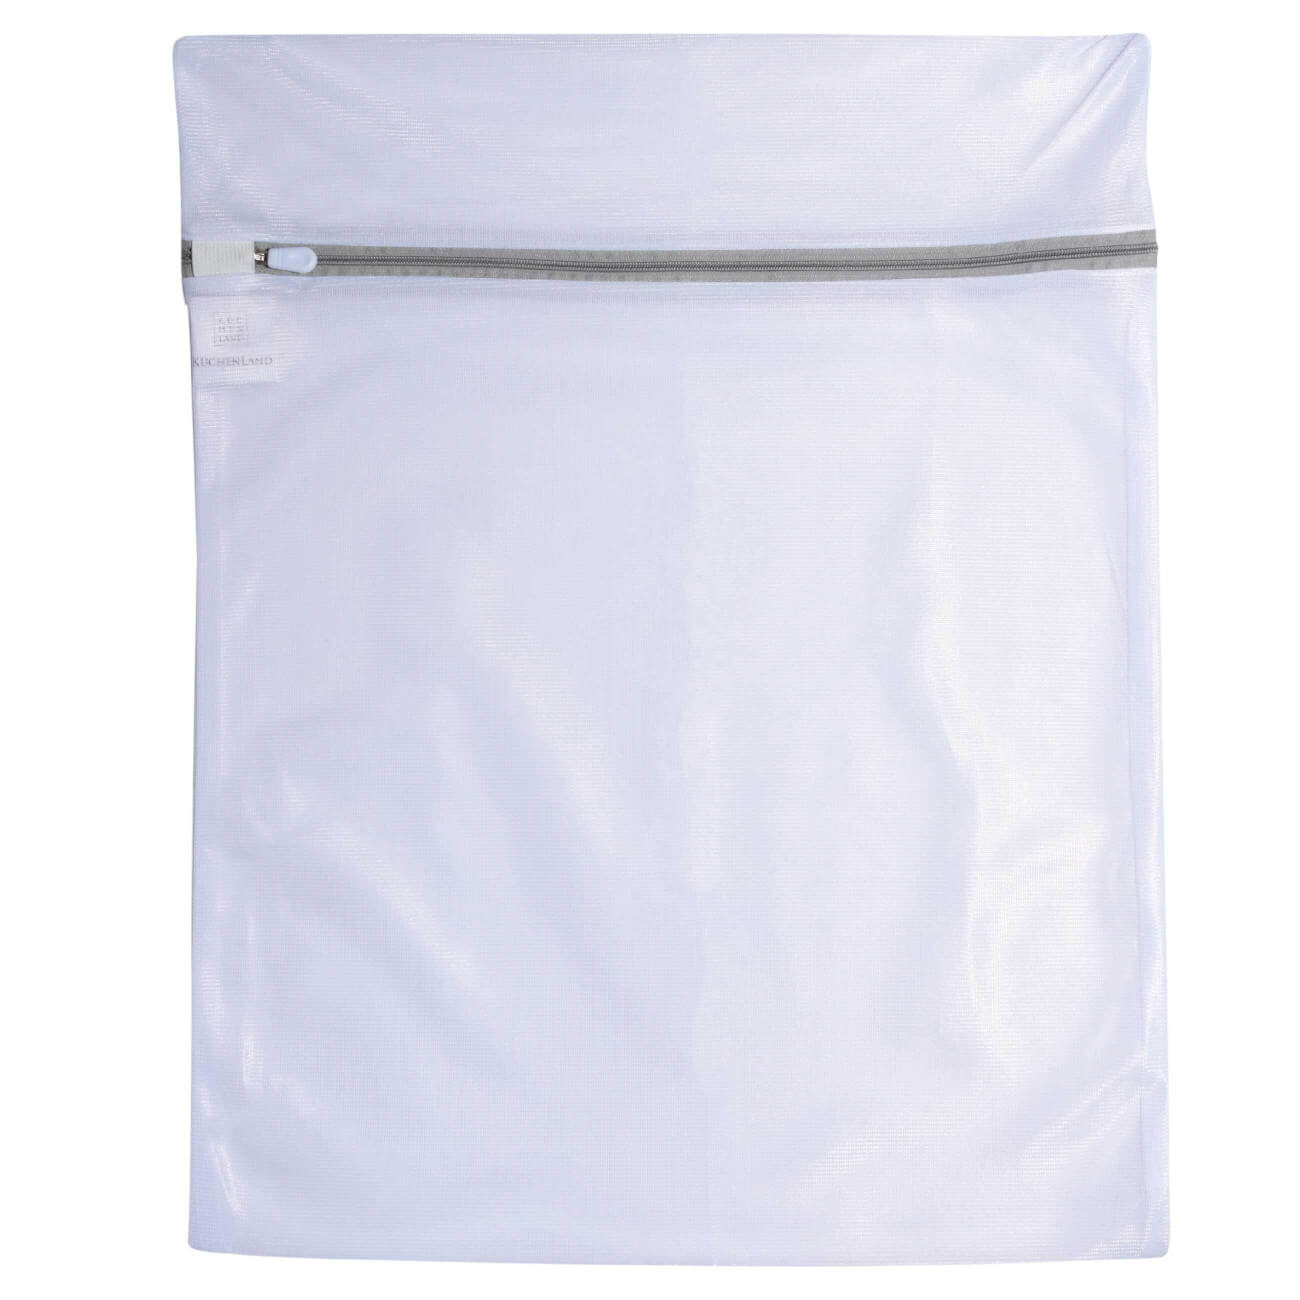 Мешок для стирки одежды, 40х50 см, полиэстер, бело-серый, Safety plus мешок для стирки носков и колготок 34х15 см двойной полиэстер safety plus